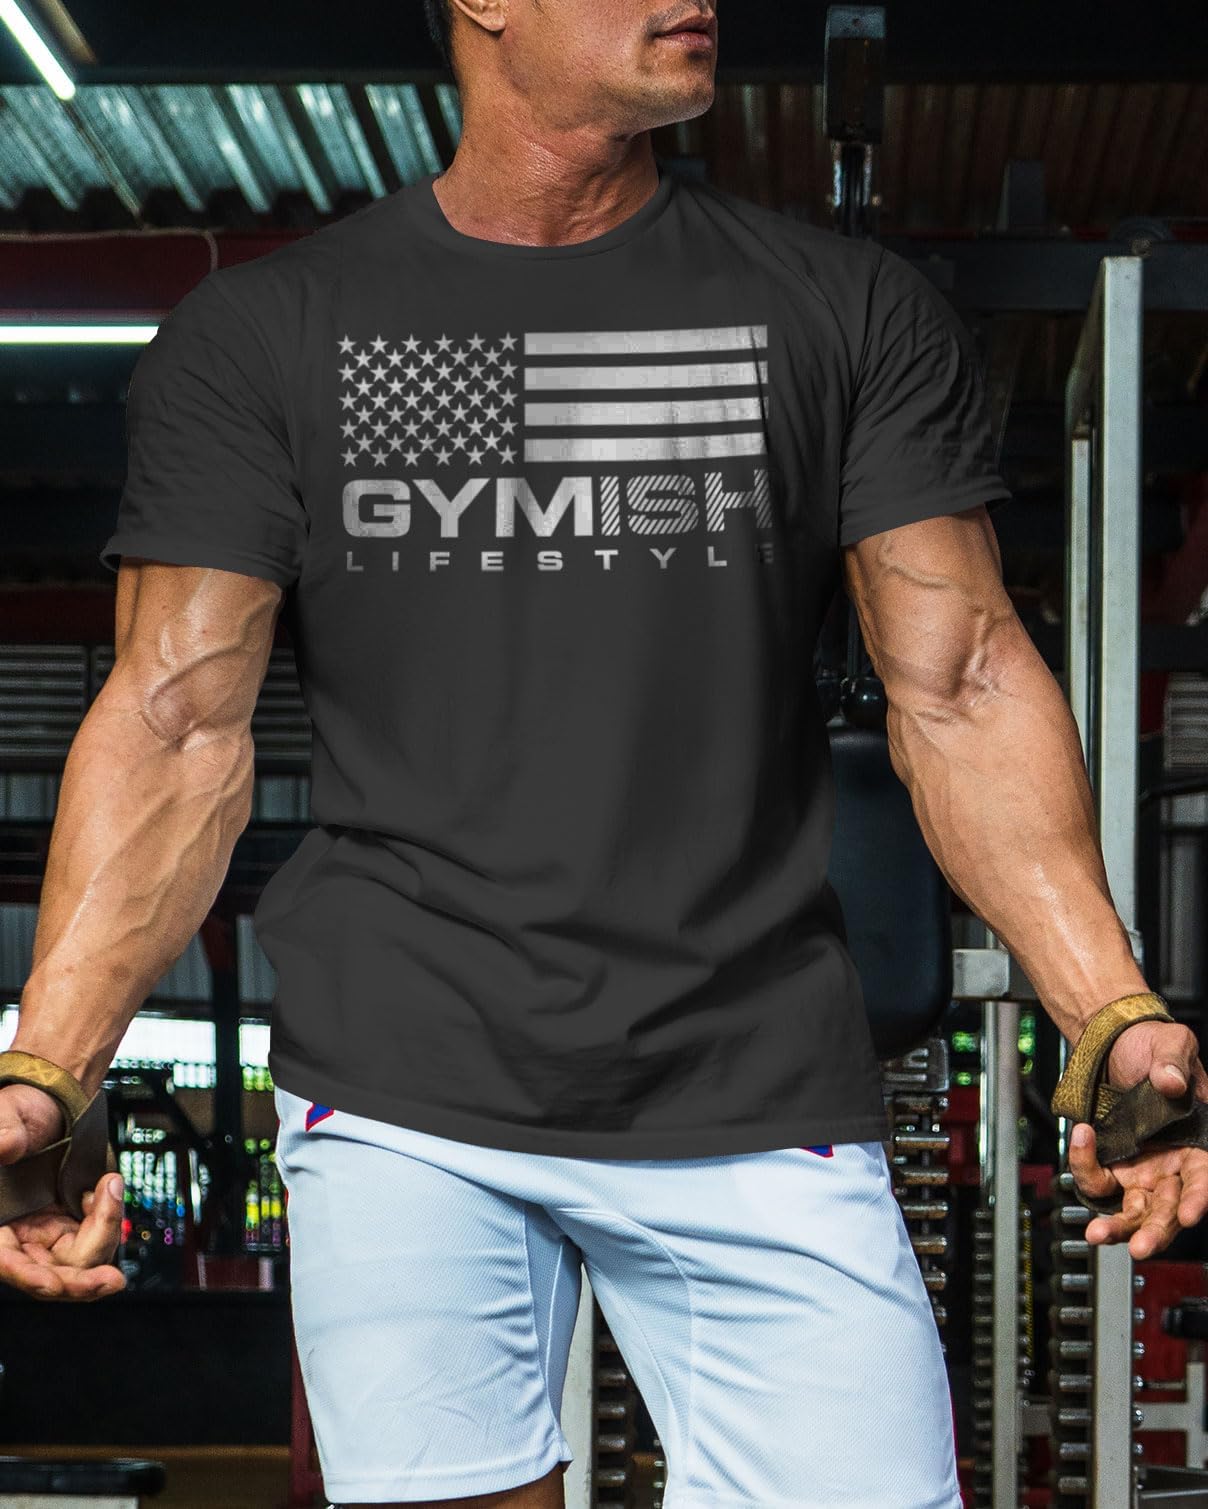 074. Gymish Flag (4) Workout T-Shirt